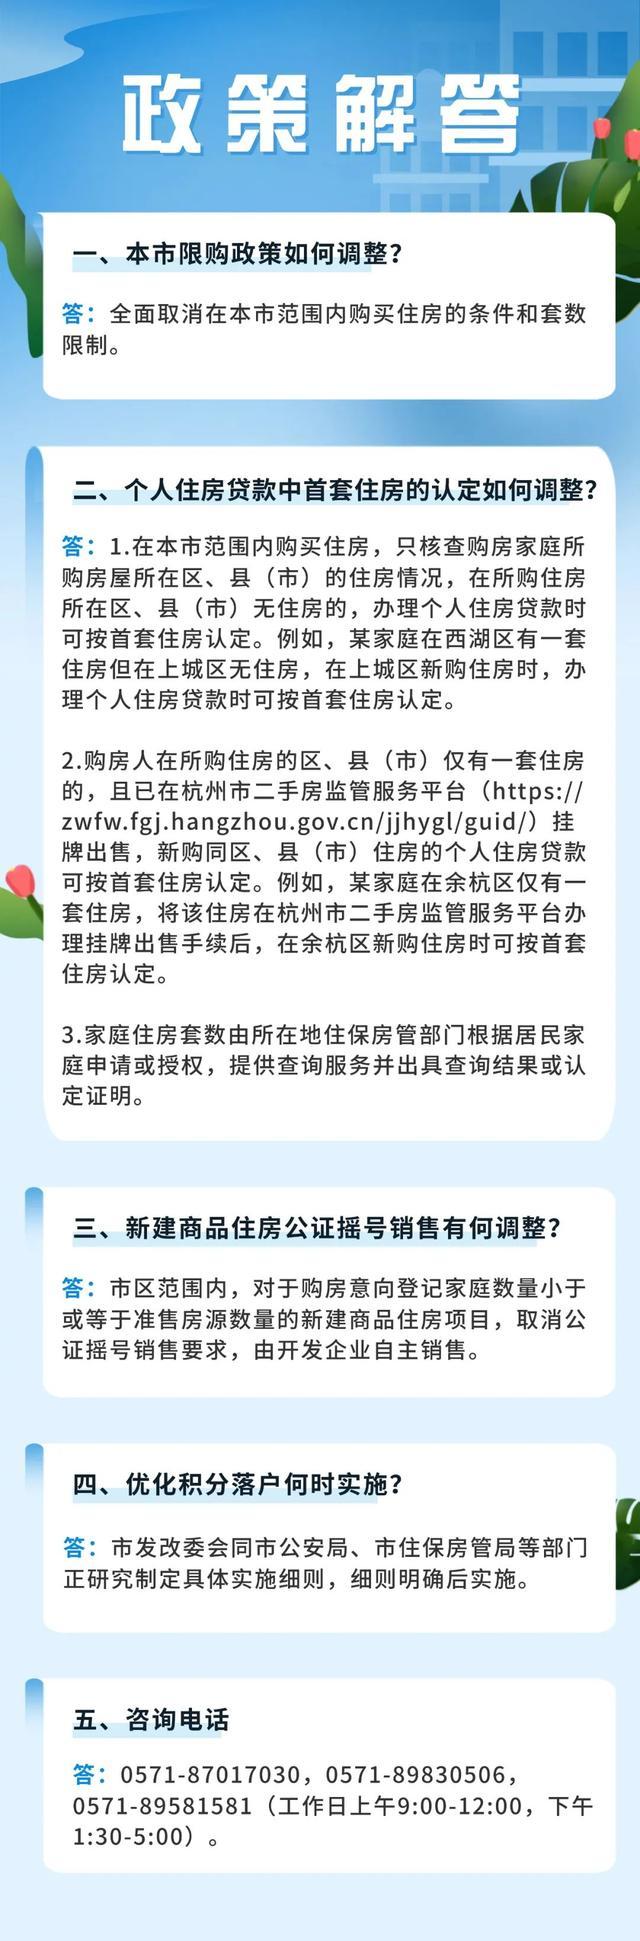 杭州全面取消住房限购 市内买房不再审核购房资格